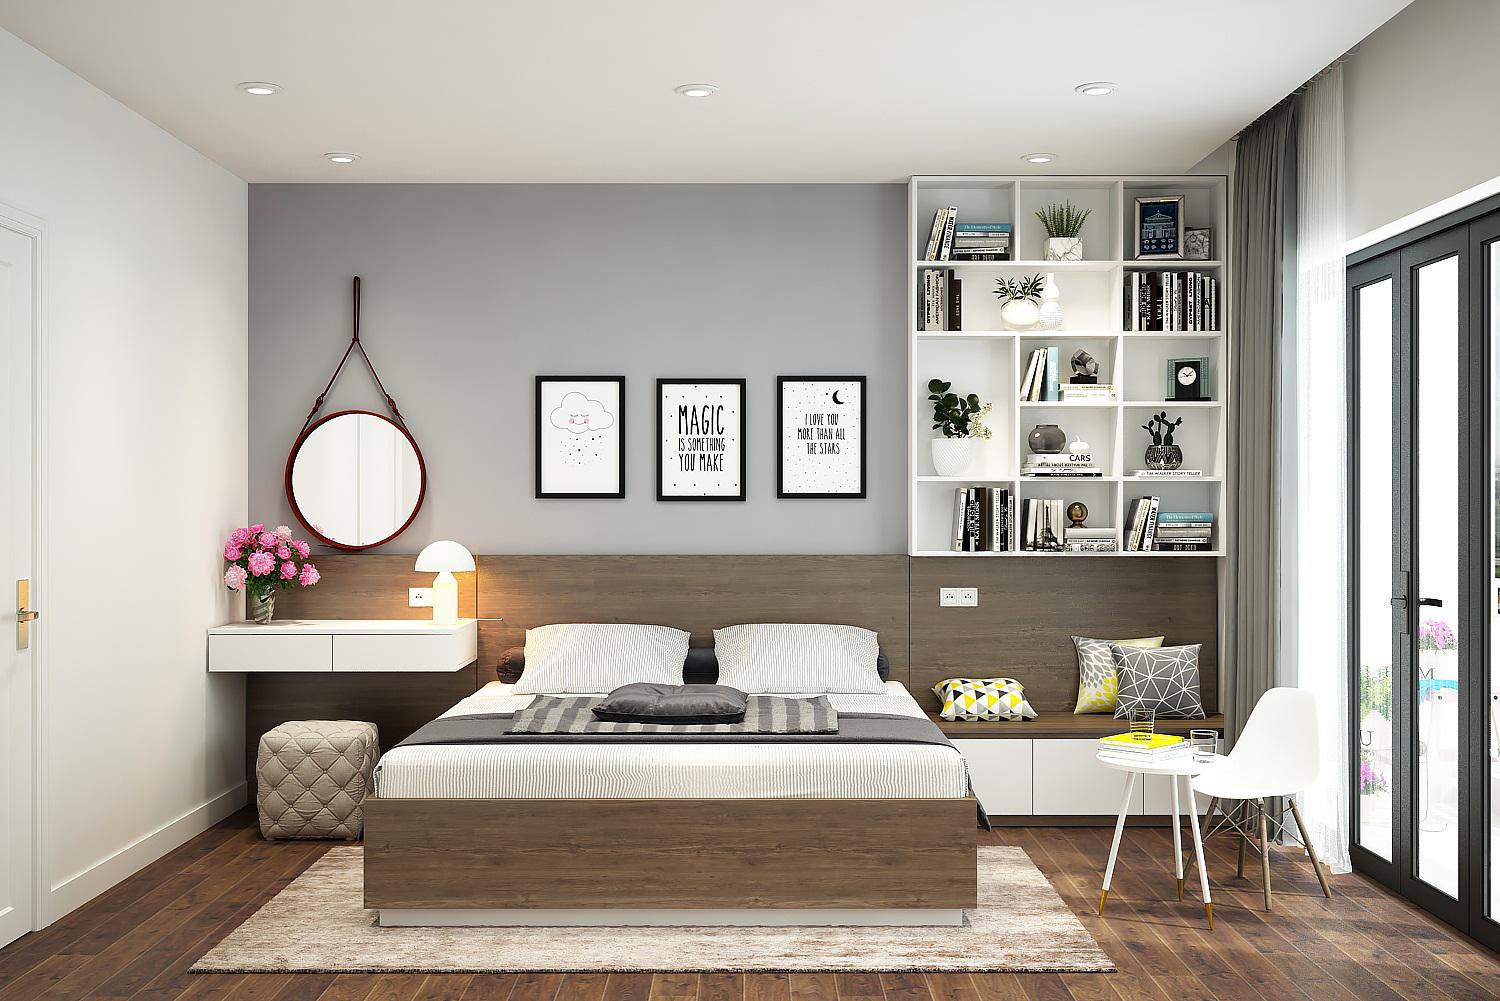 Ý tưởng thiết kế nội thất phòng ngủ diện tích 15m² với tổng chi phí 20 triệu đồng - Ảnh 8.